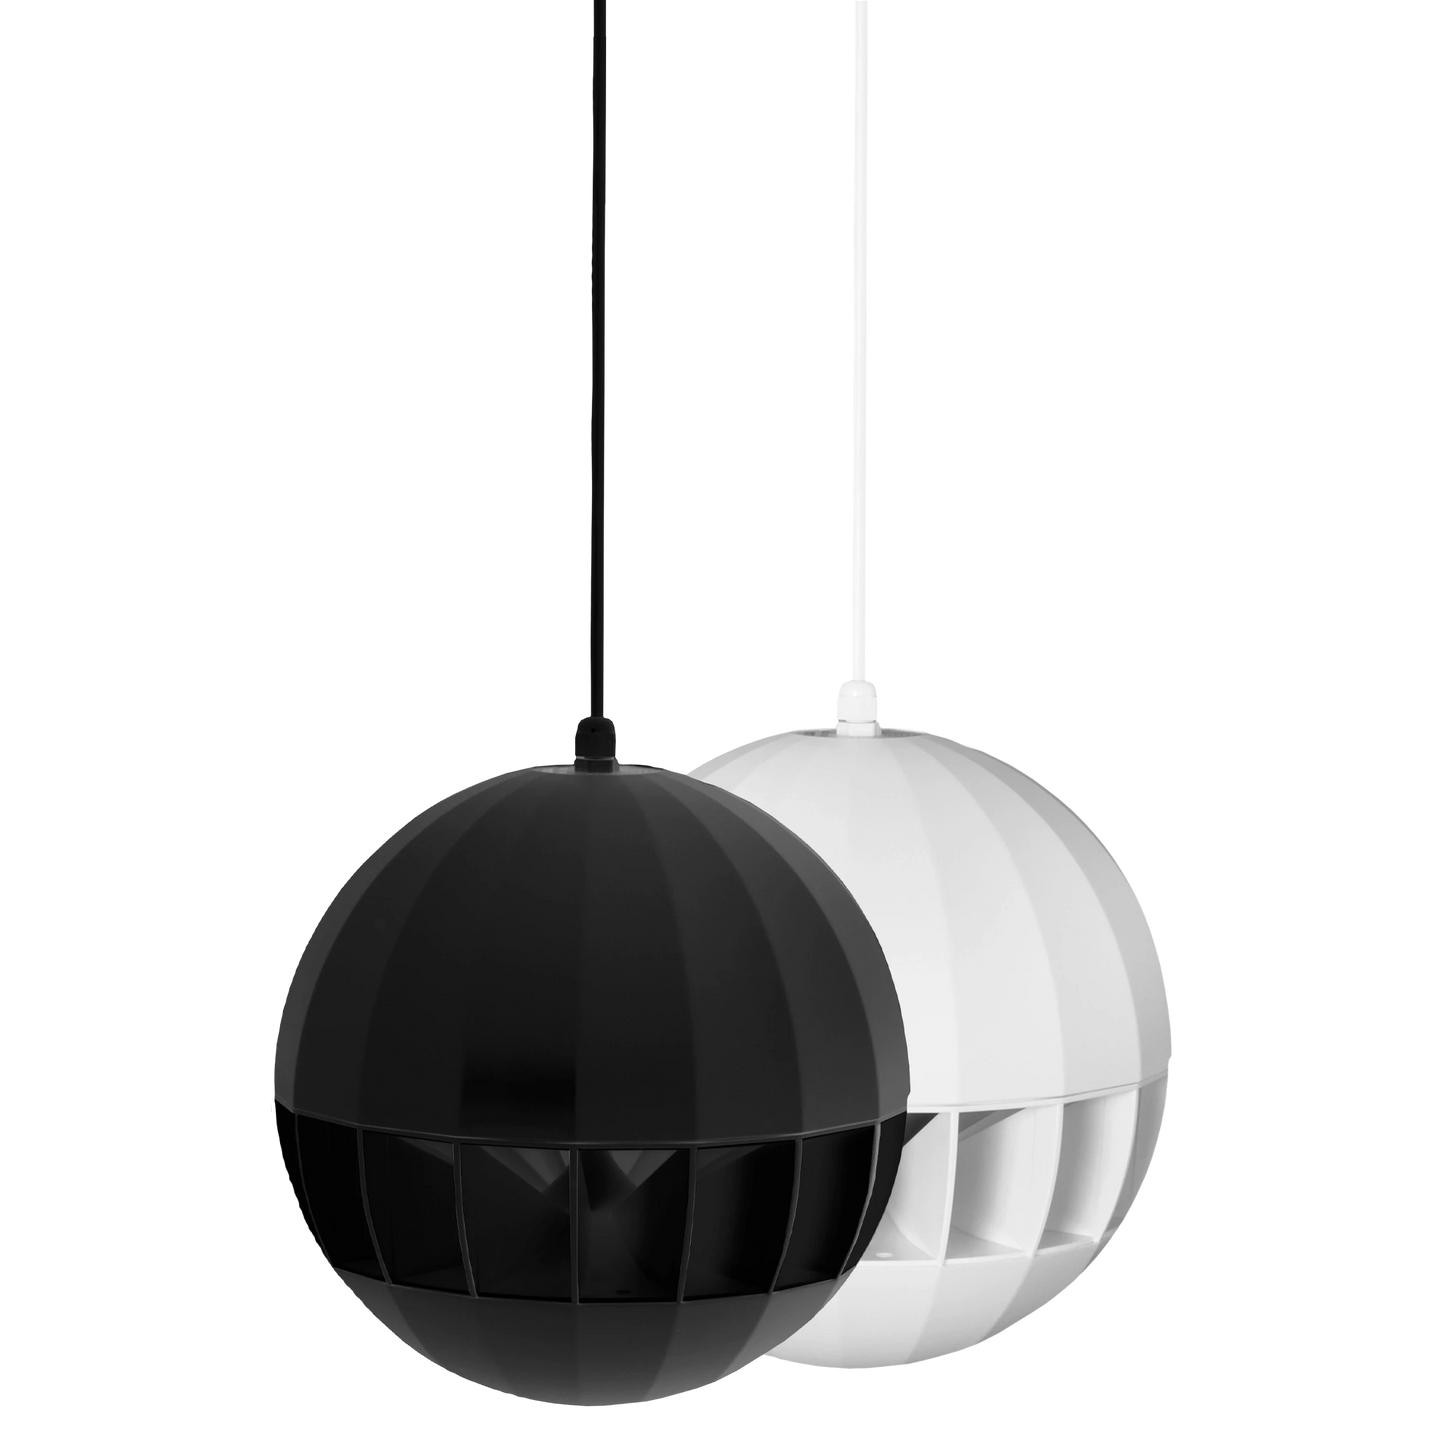 ASP20 100V Spherical hanging sound projector, Black